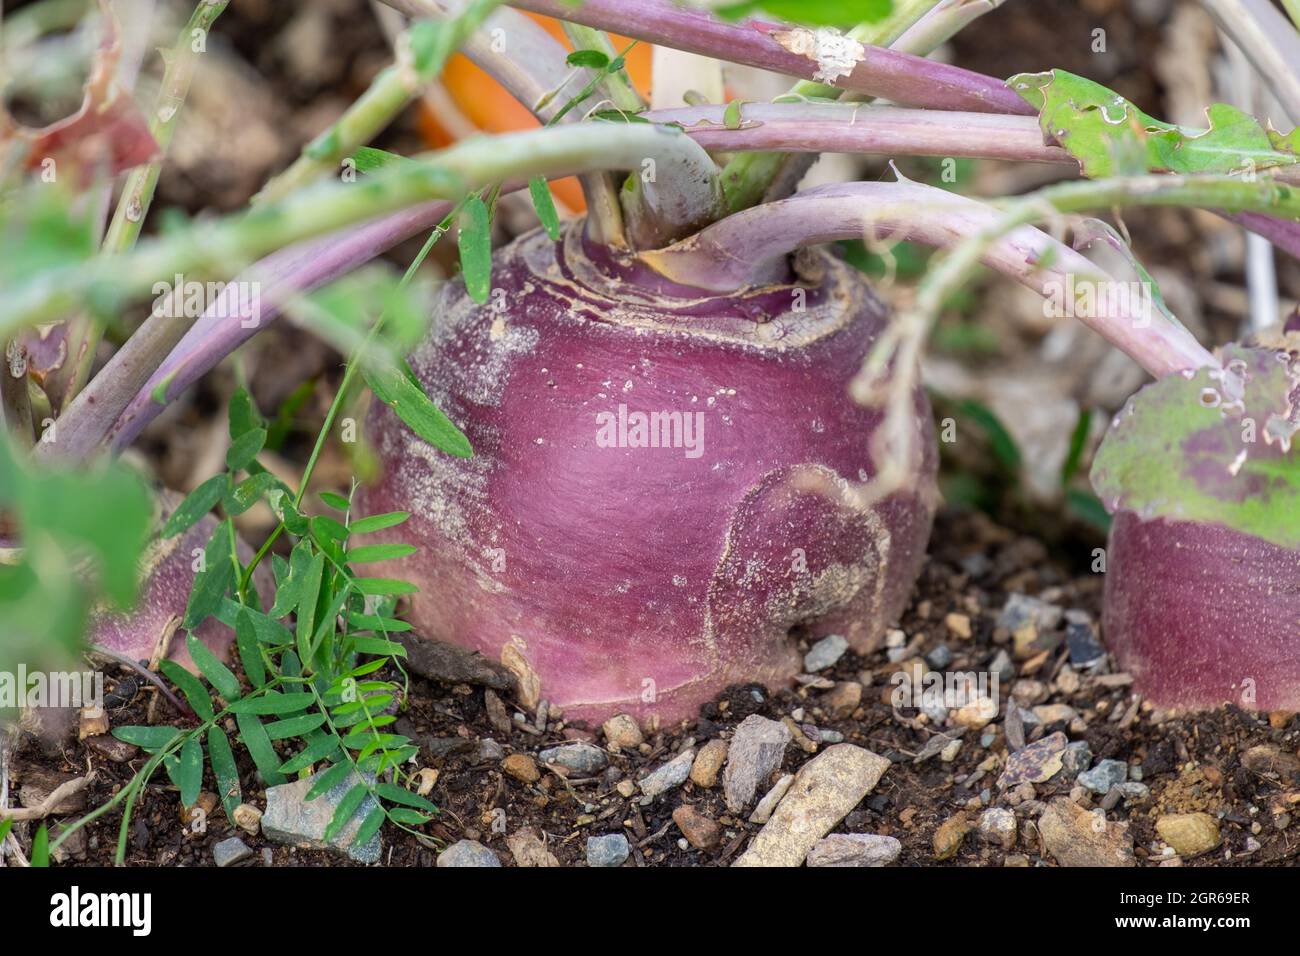 Ein großes rundes organisches, violett gefärbtes Rüben- oder Rutabaga-Wurzelgemüse, das in einem Hochbeet-Garten wächst. Der Boden auf dem Boden ist dunkel und reich. Stockfoto